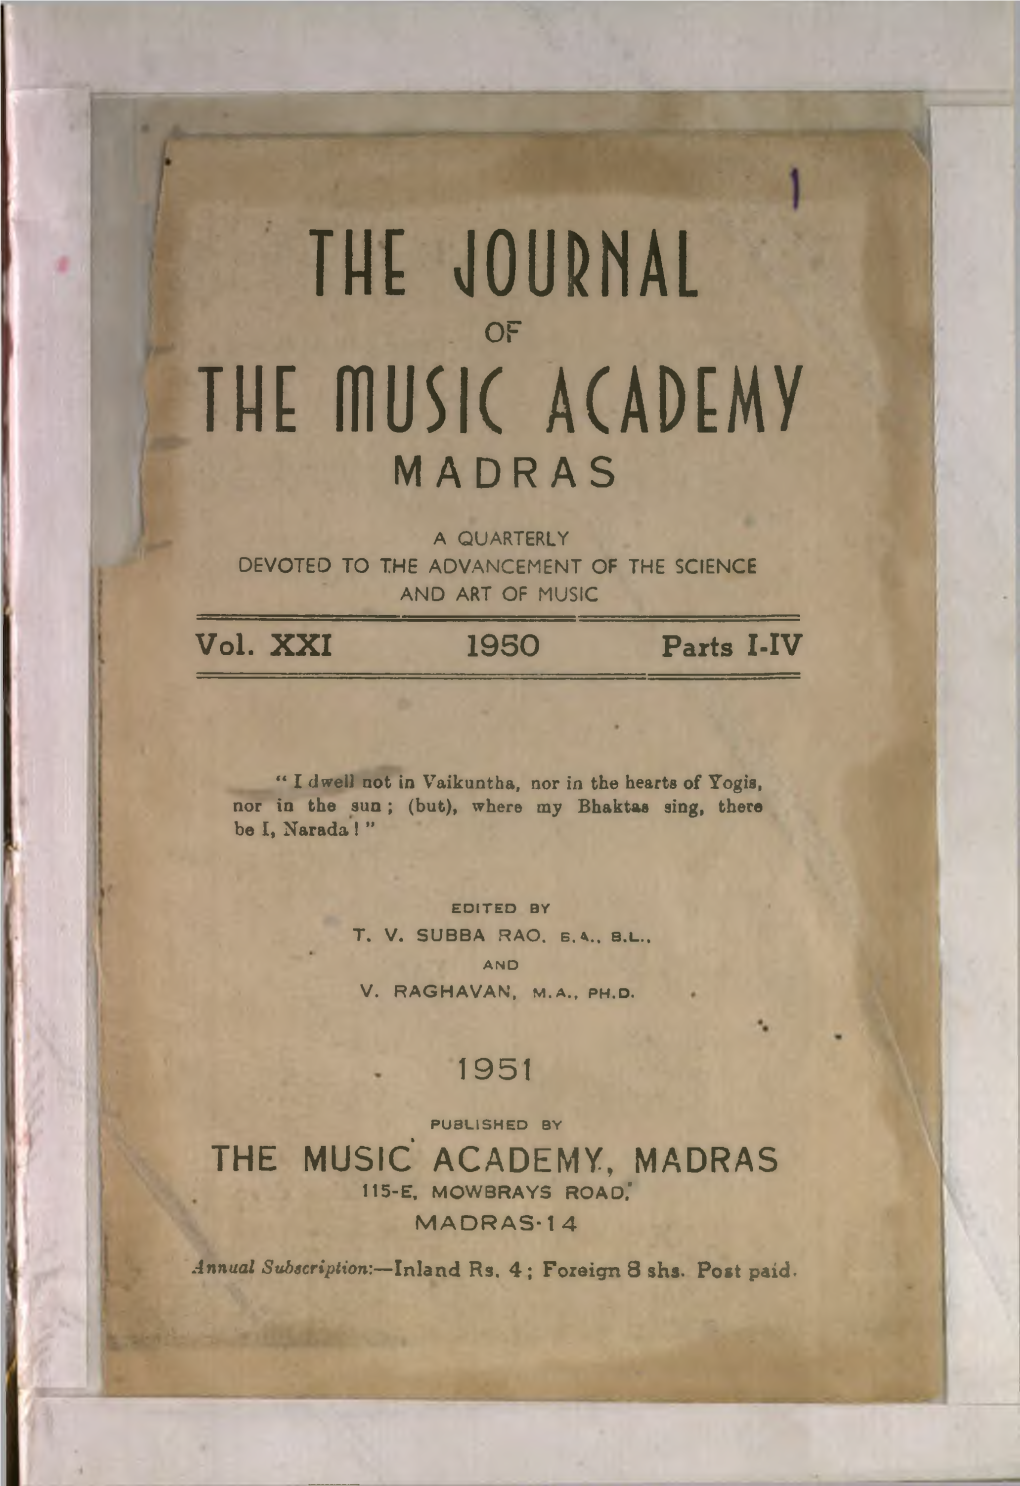 The Music' Academy, Madras 115-E, Mow3rays Road,* Madras-! 4